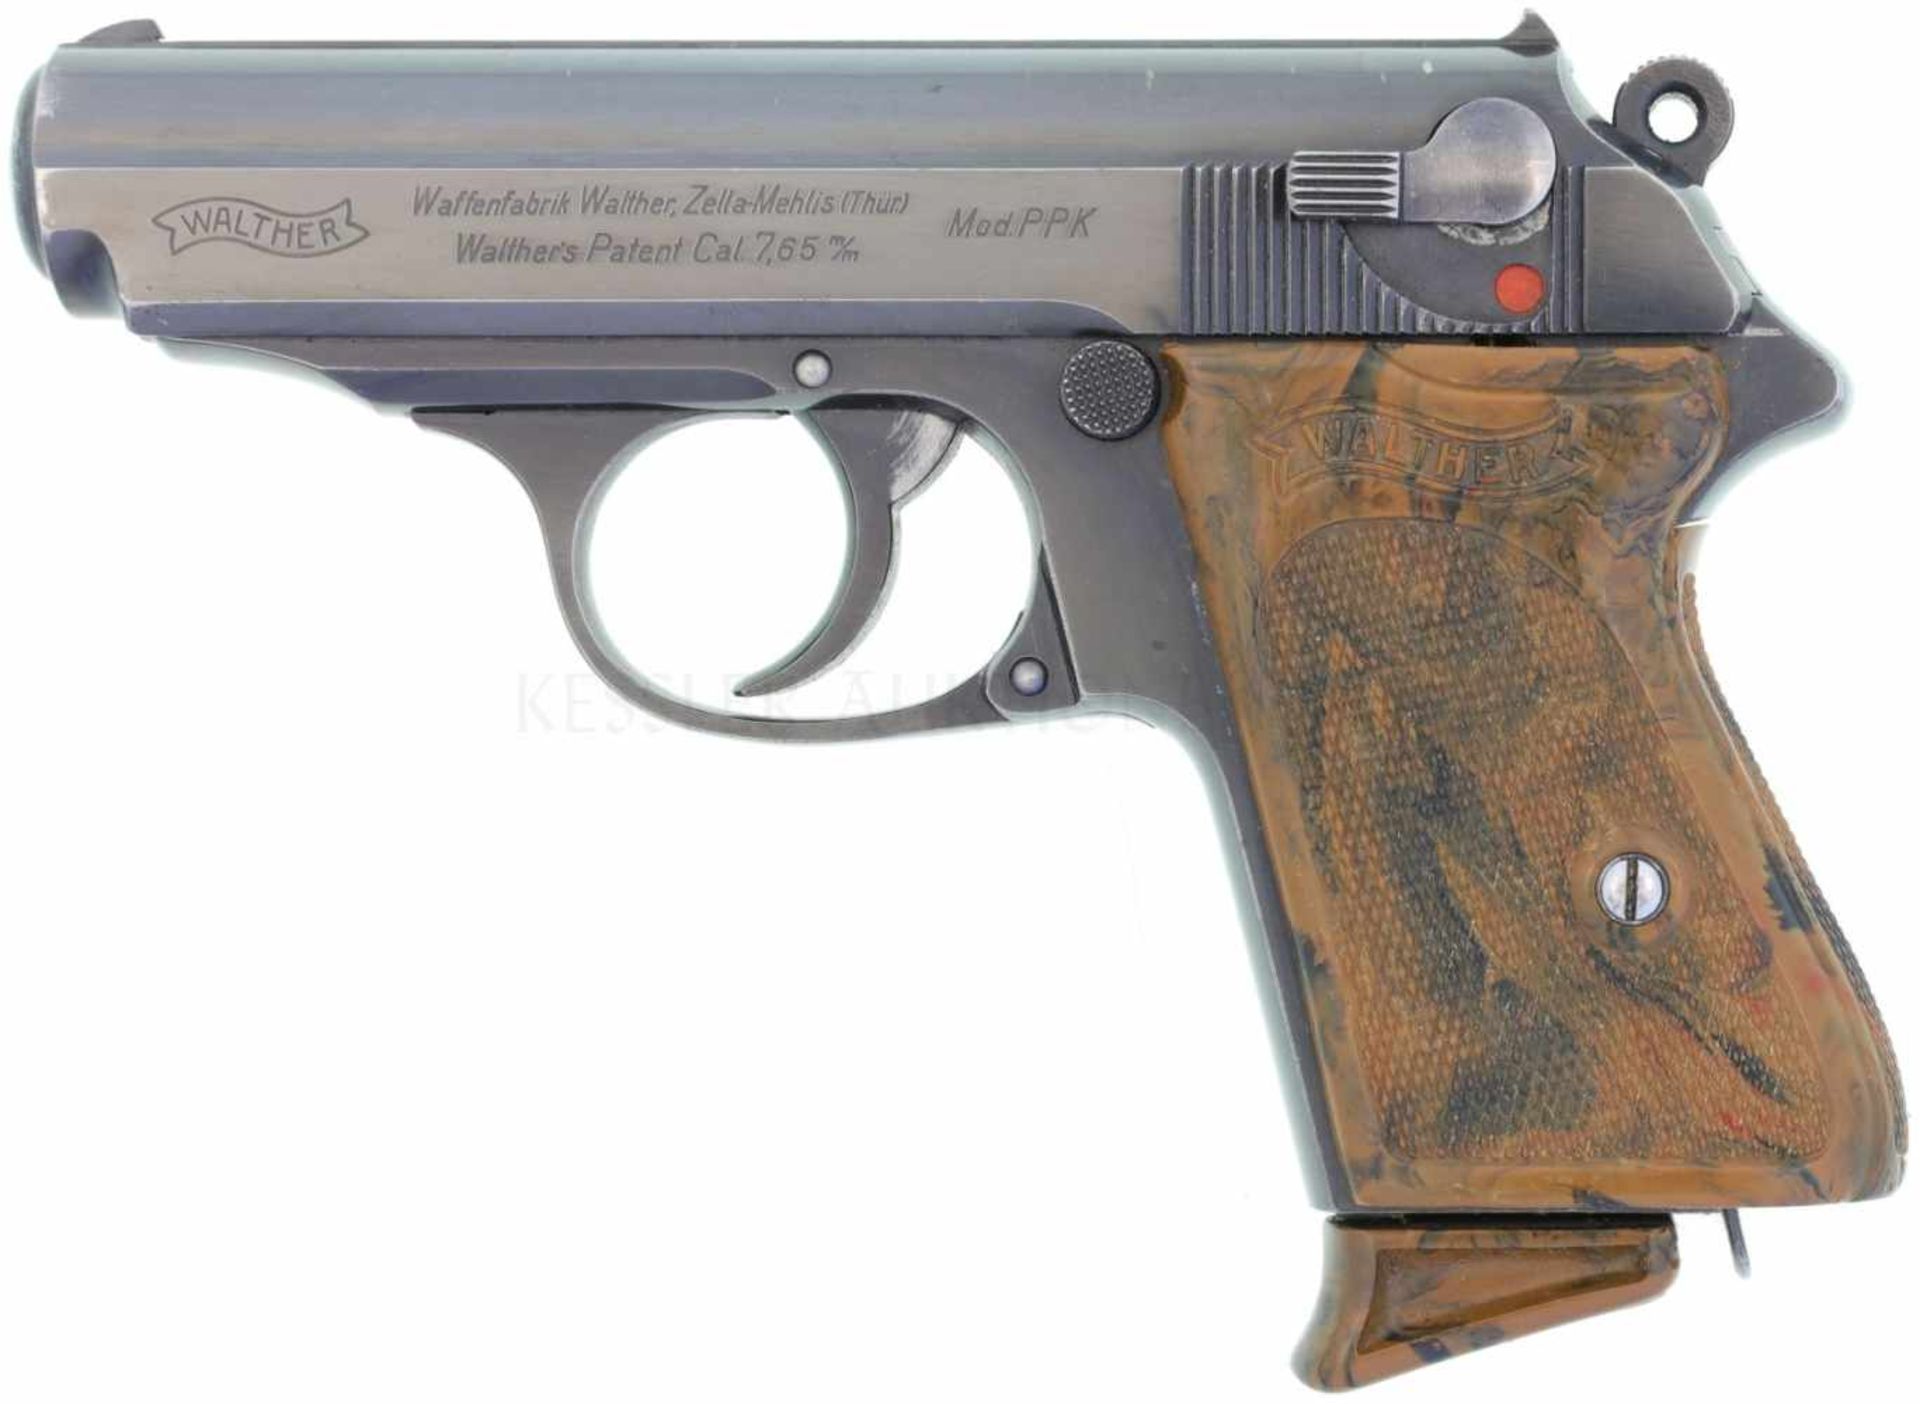 Pistole, Walther PPK, Zella Mehlis, Kal. 7.65mm LL 84mm, brünierte Ganzstahlwaffe mit DA-Abzug und